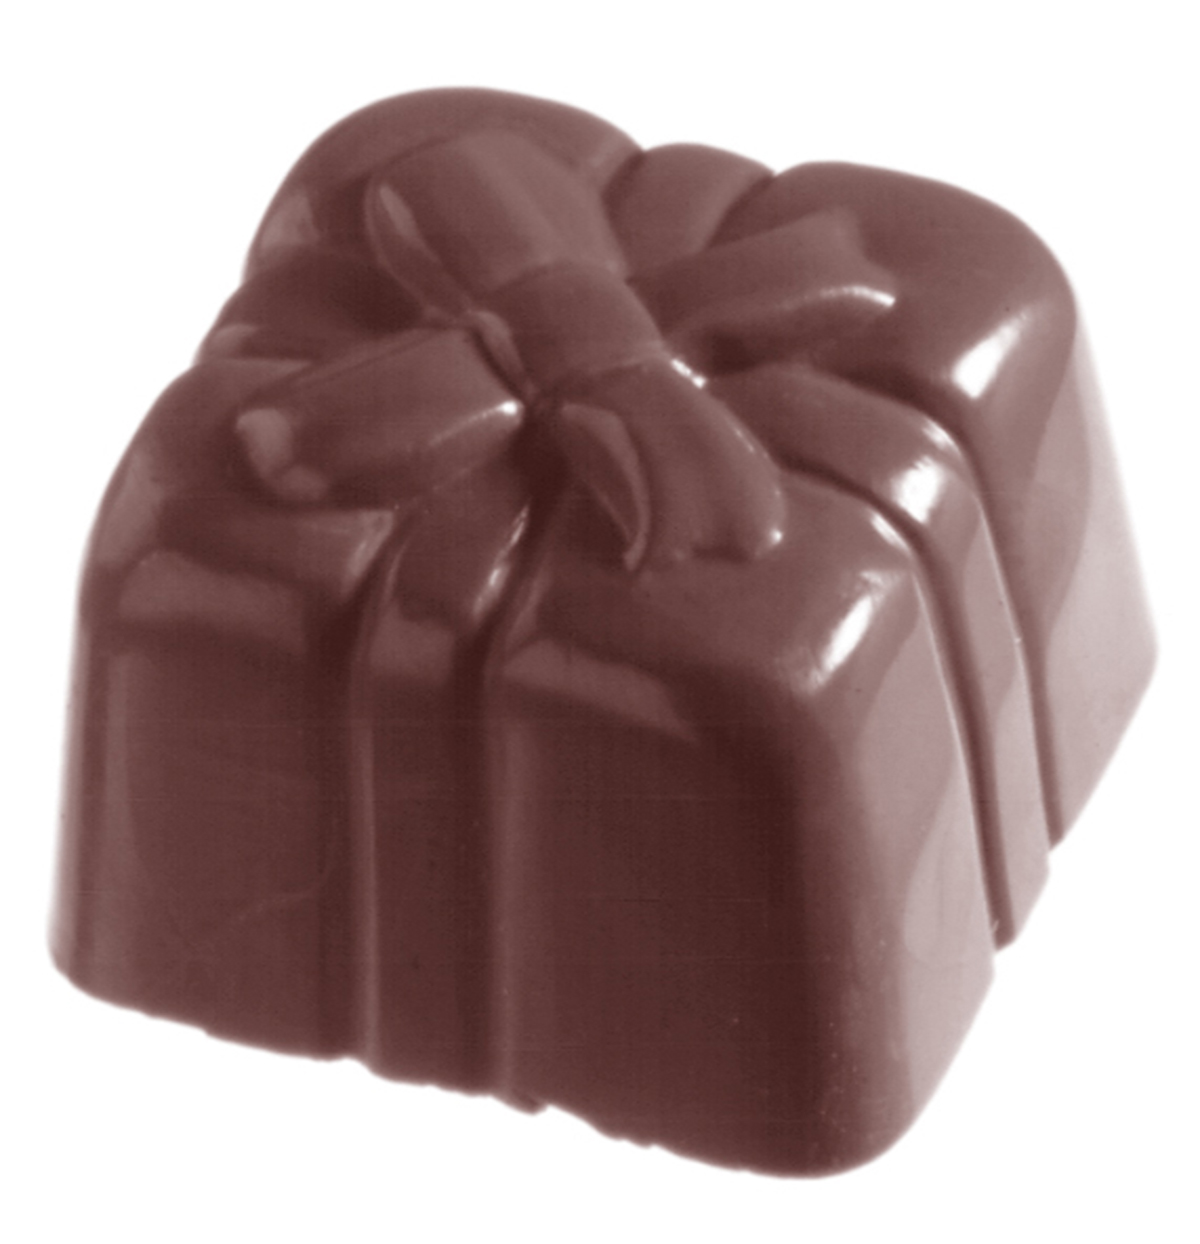 Billede af Professionel chokoladeform i polycarbonat - Present CW1036